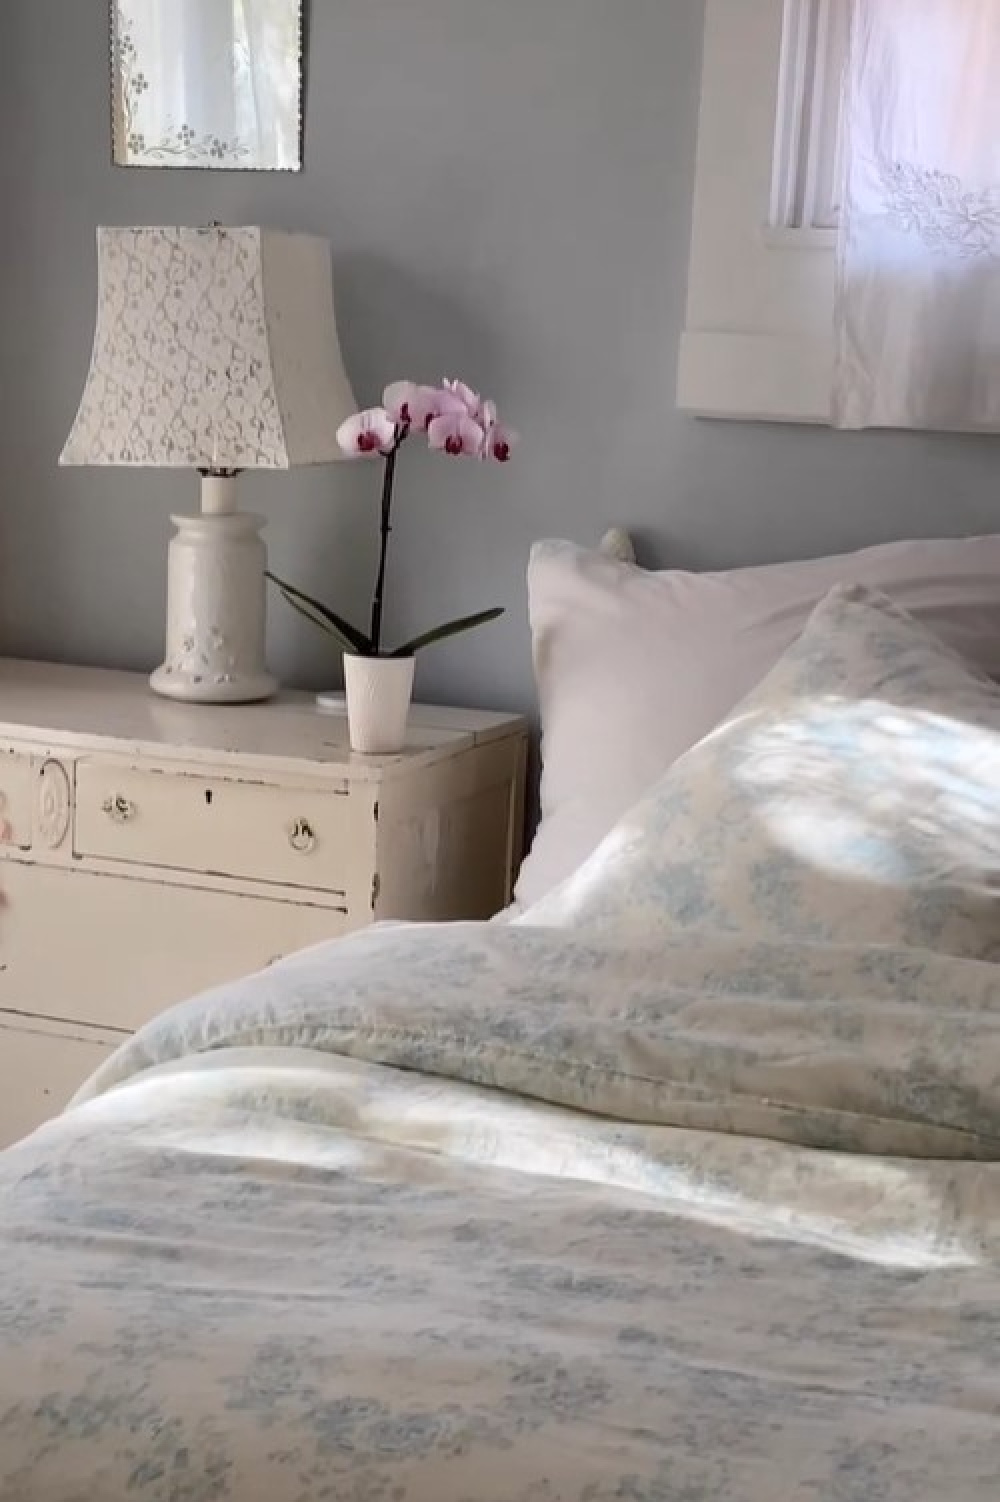 Beautiful pastel blue Shabby Chic decor, bedding and accents from Rachel Ashwell Shabby Chic. #rachelashwellshabbychic #shabbychicbedroom